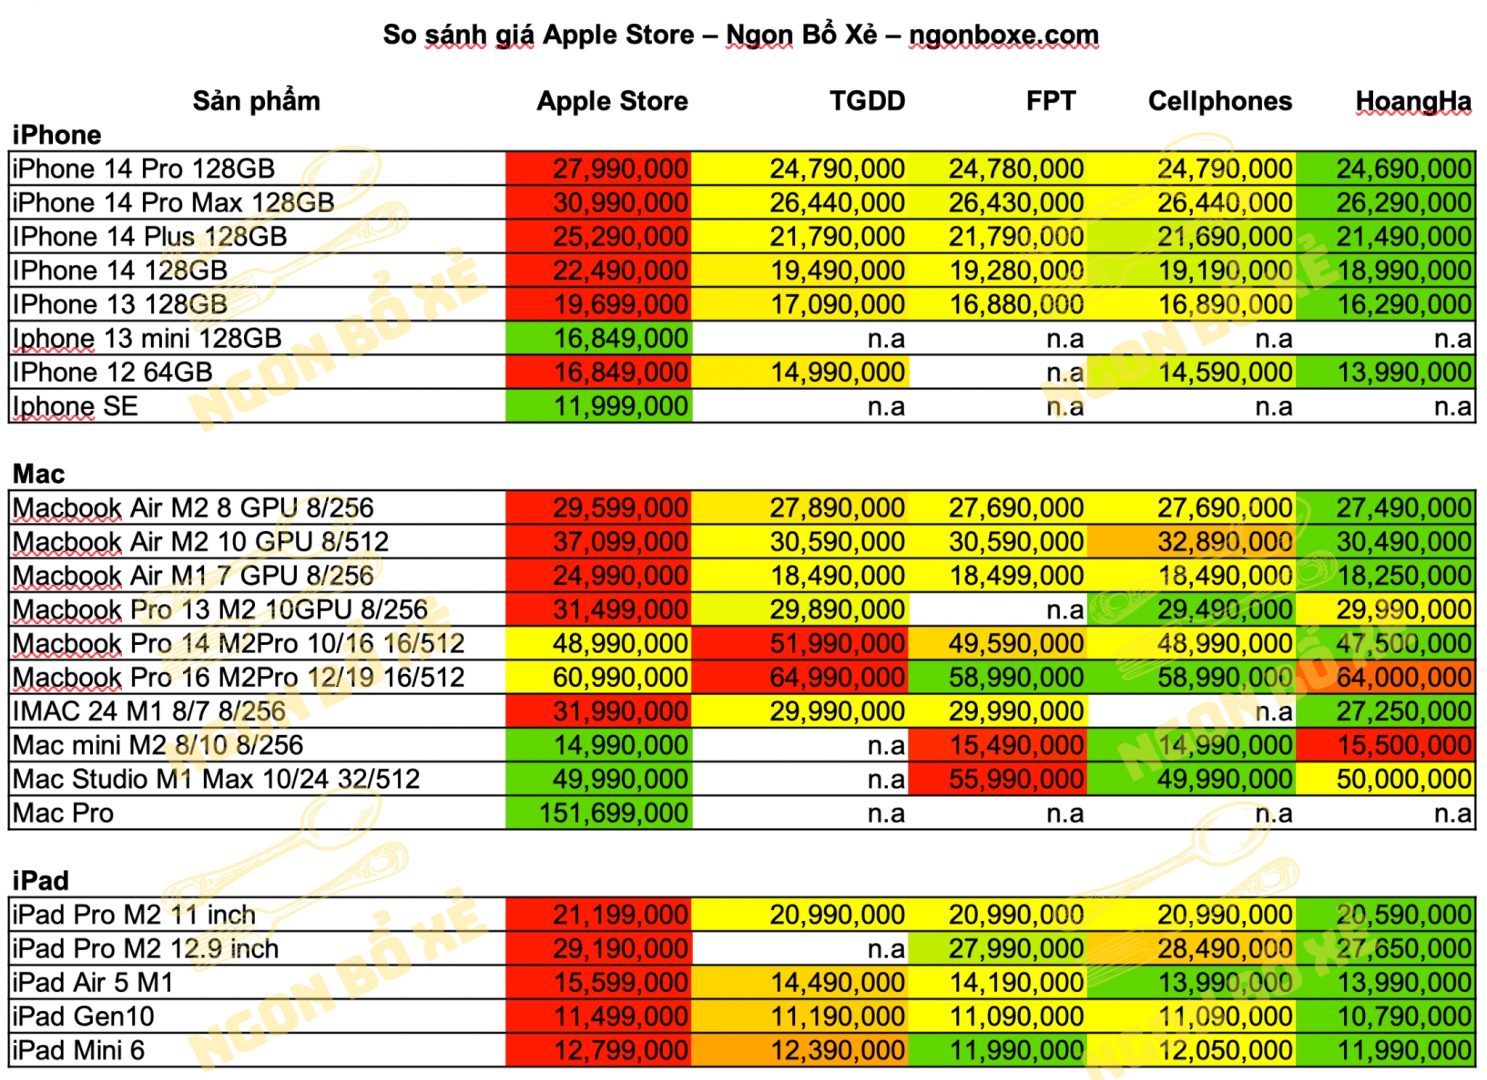 So sánh nhanh giá sản phẩm Apple Store vs các đại lý chính hãng